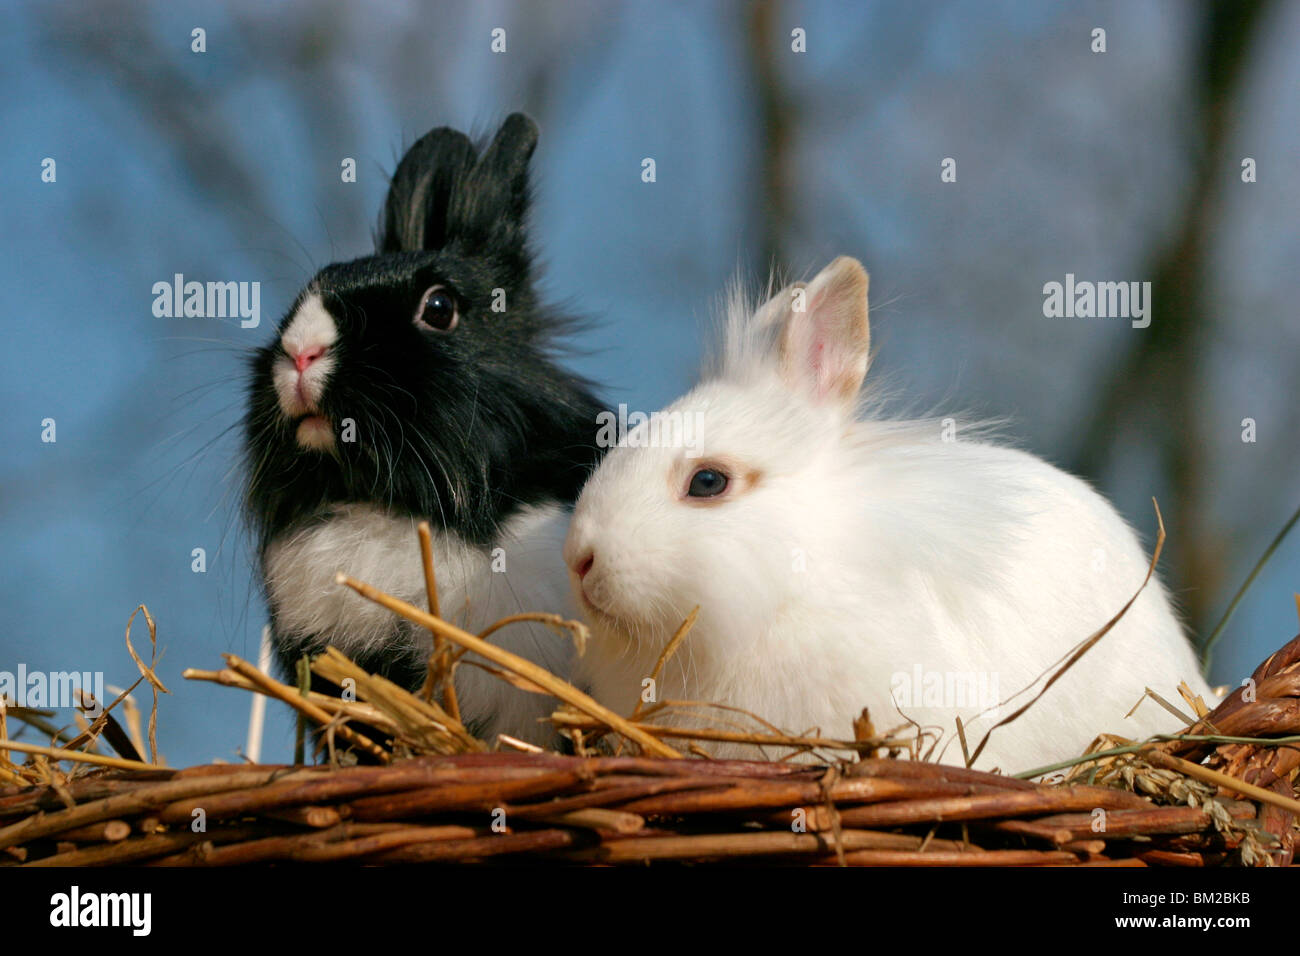 Löwenköpfchen / bunnies Stock Photo